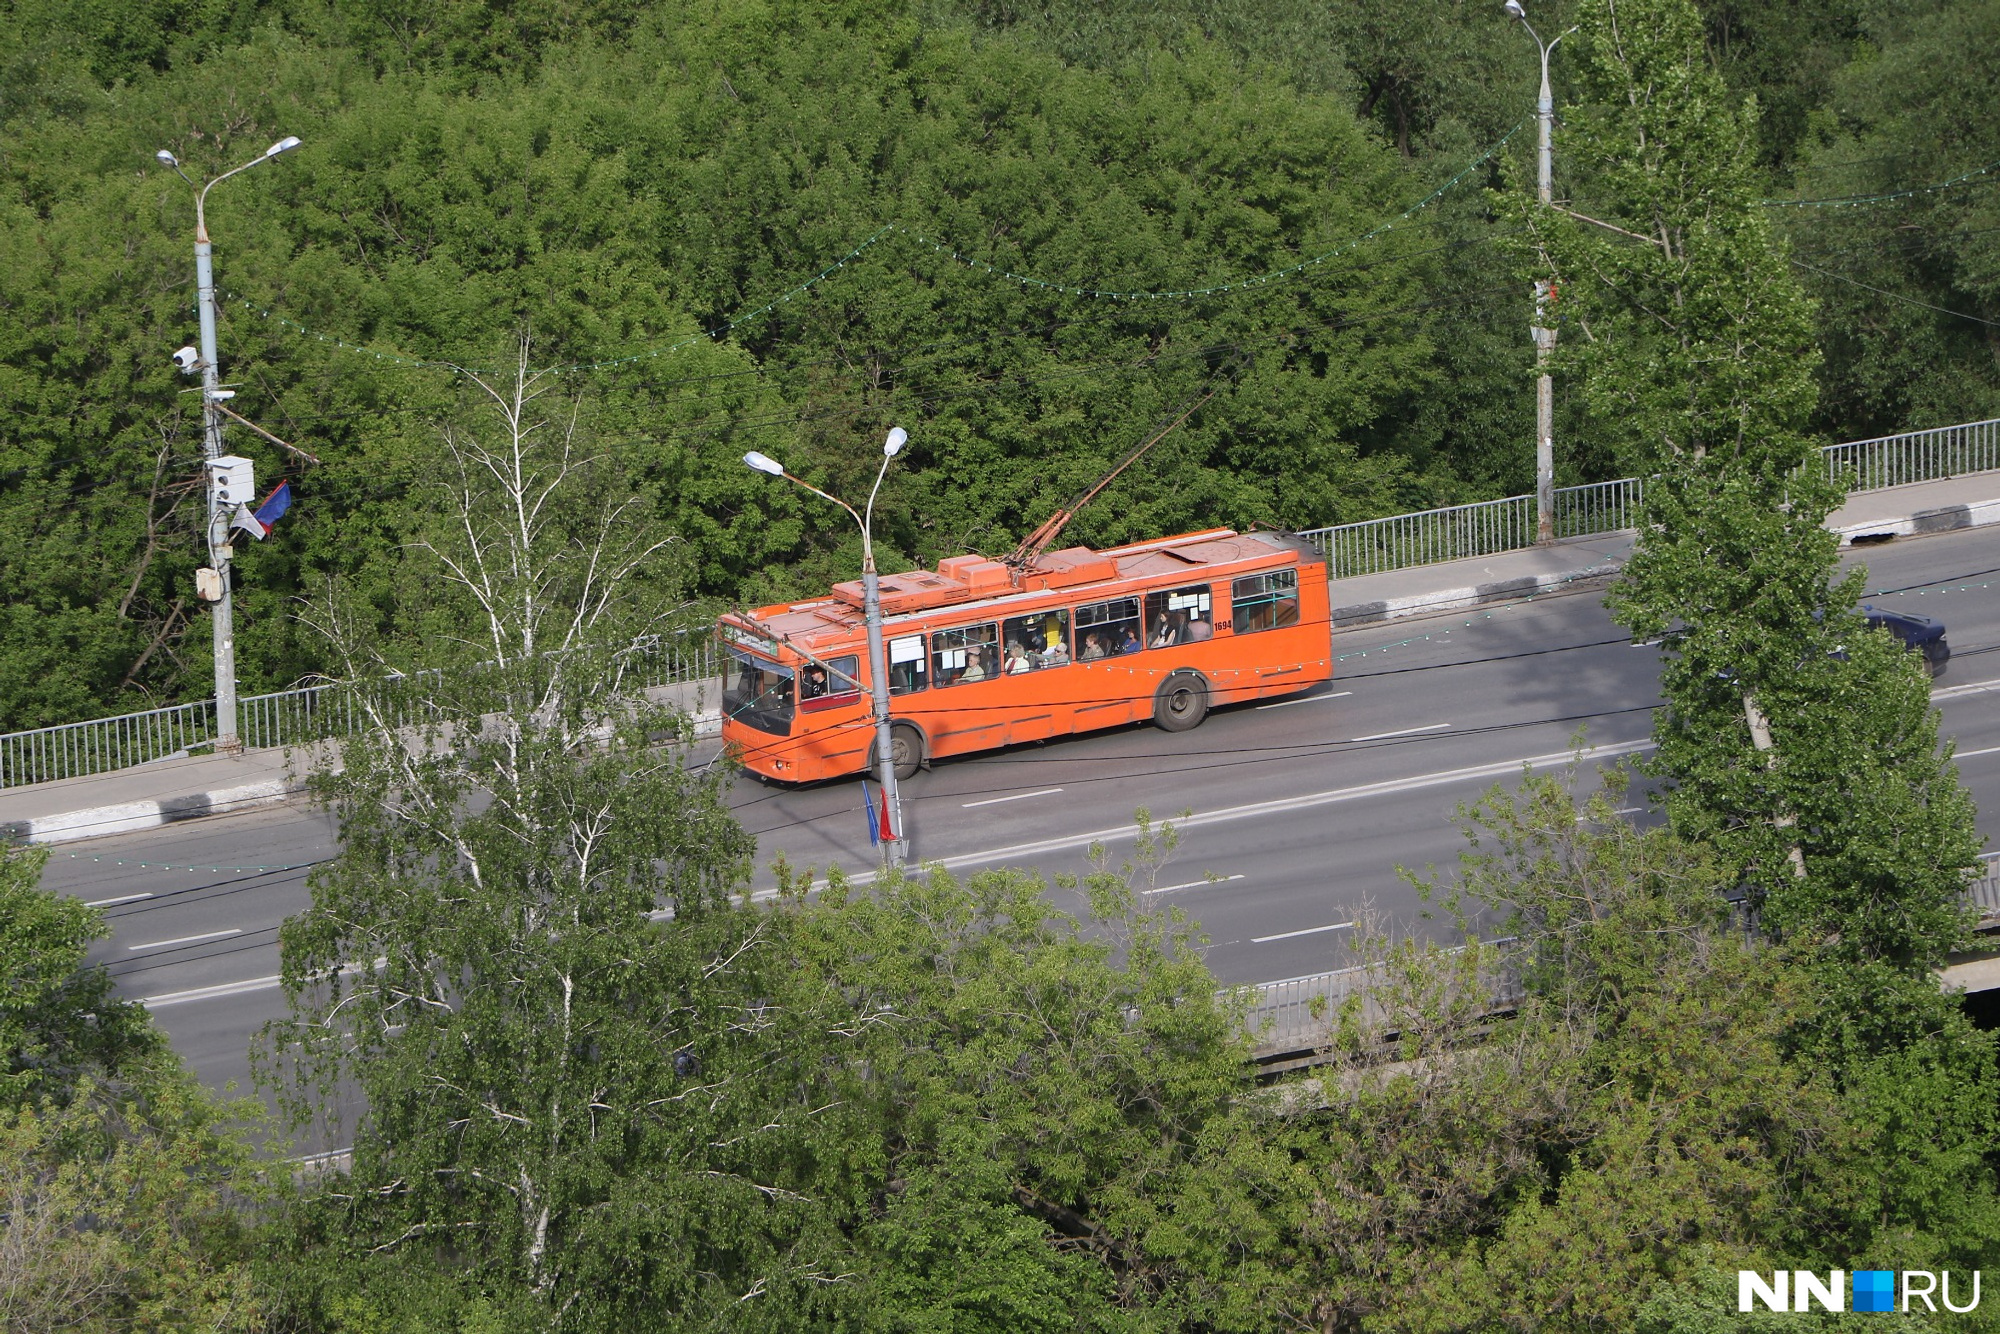 Нижегородский троллейбус 70 лет спустя. Фото: Наталья Бурухина